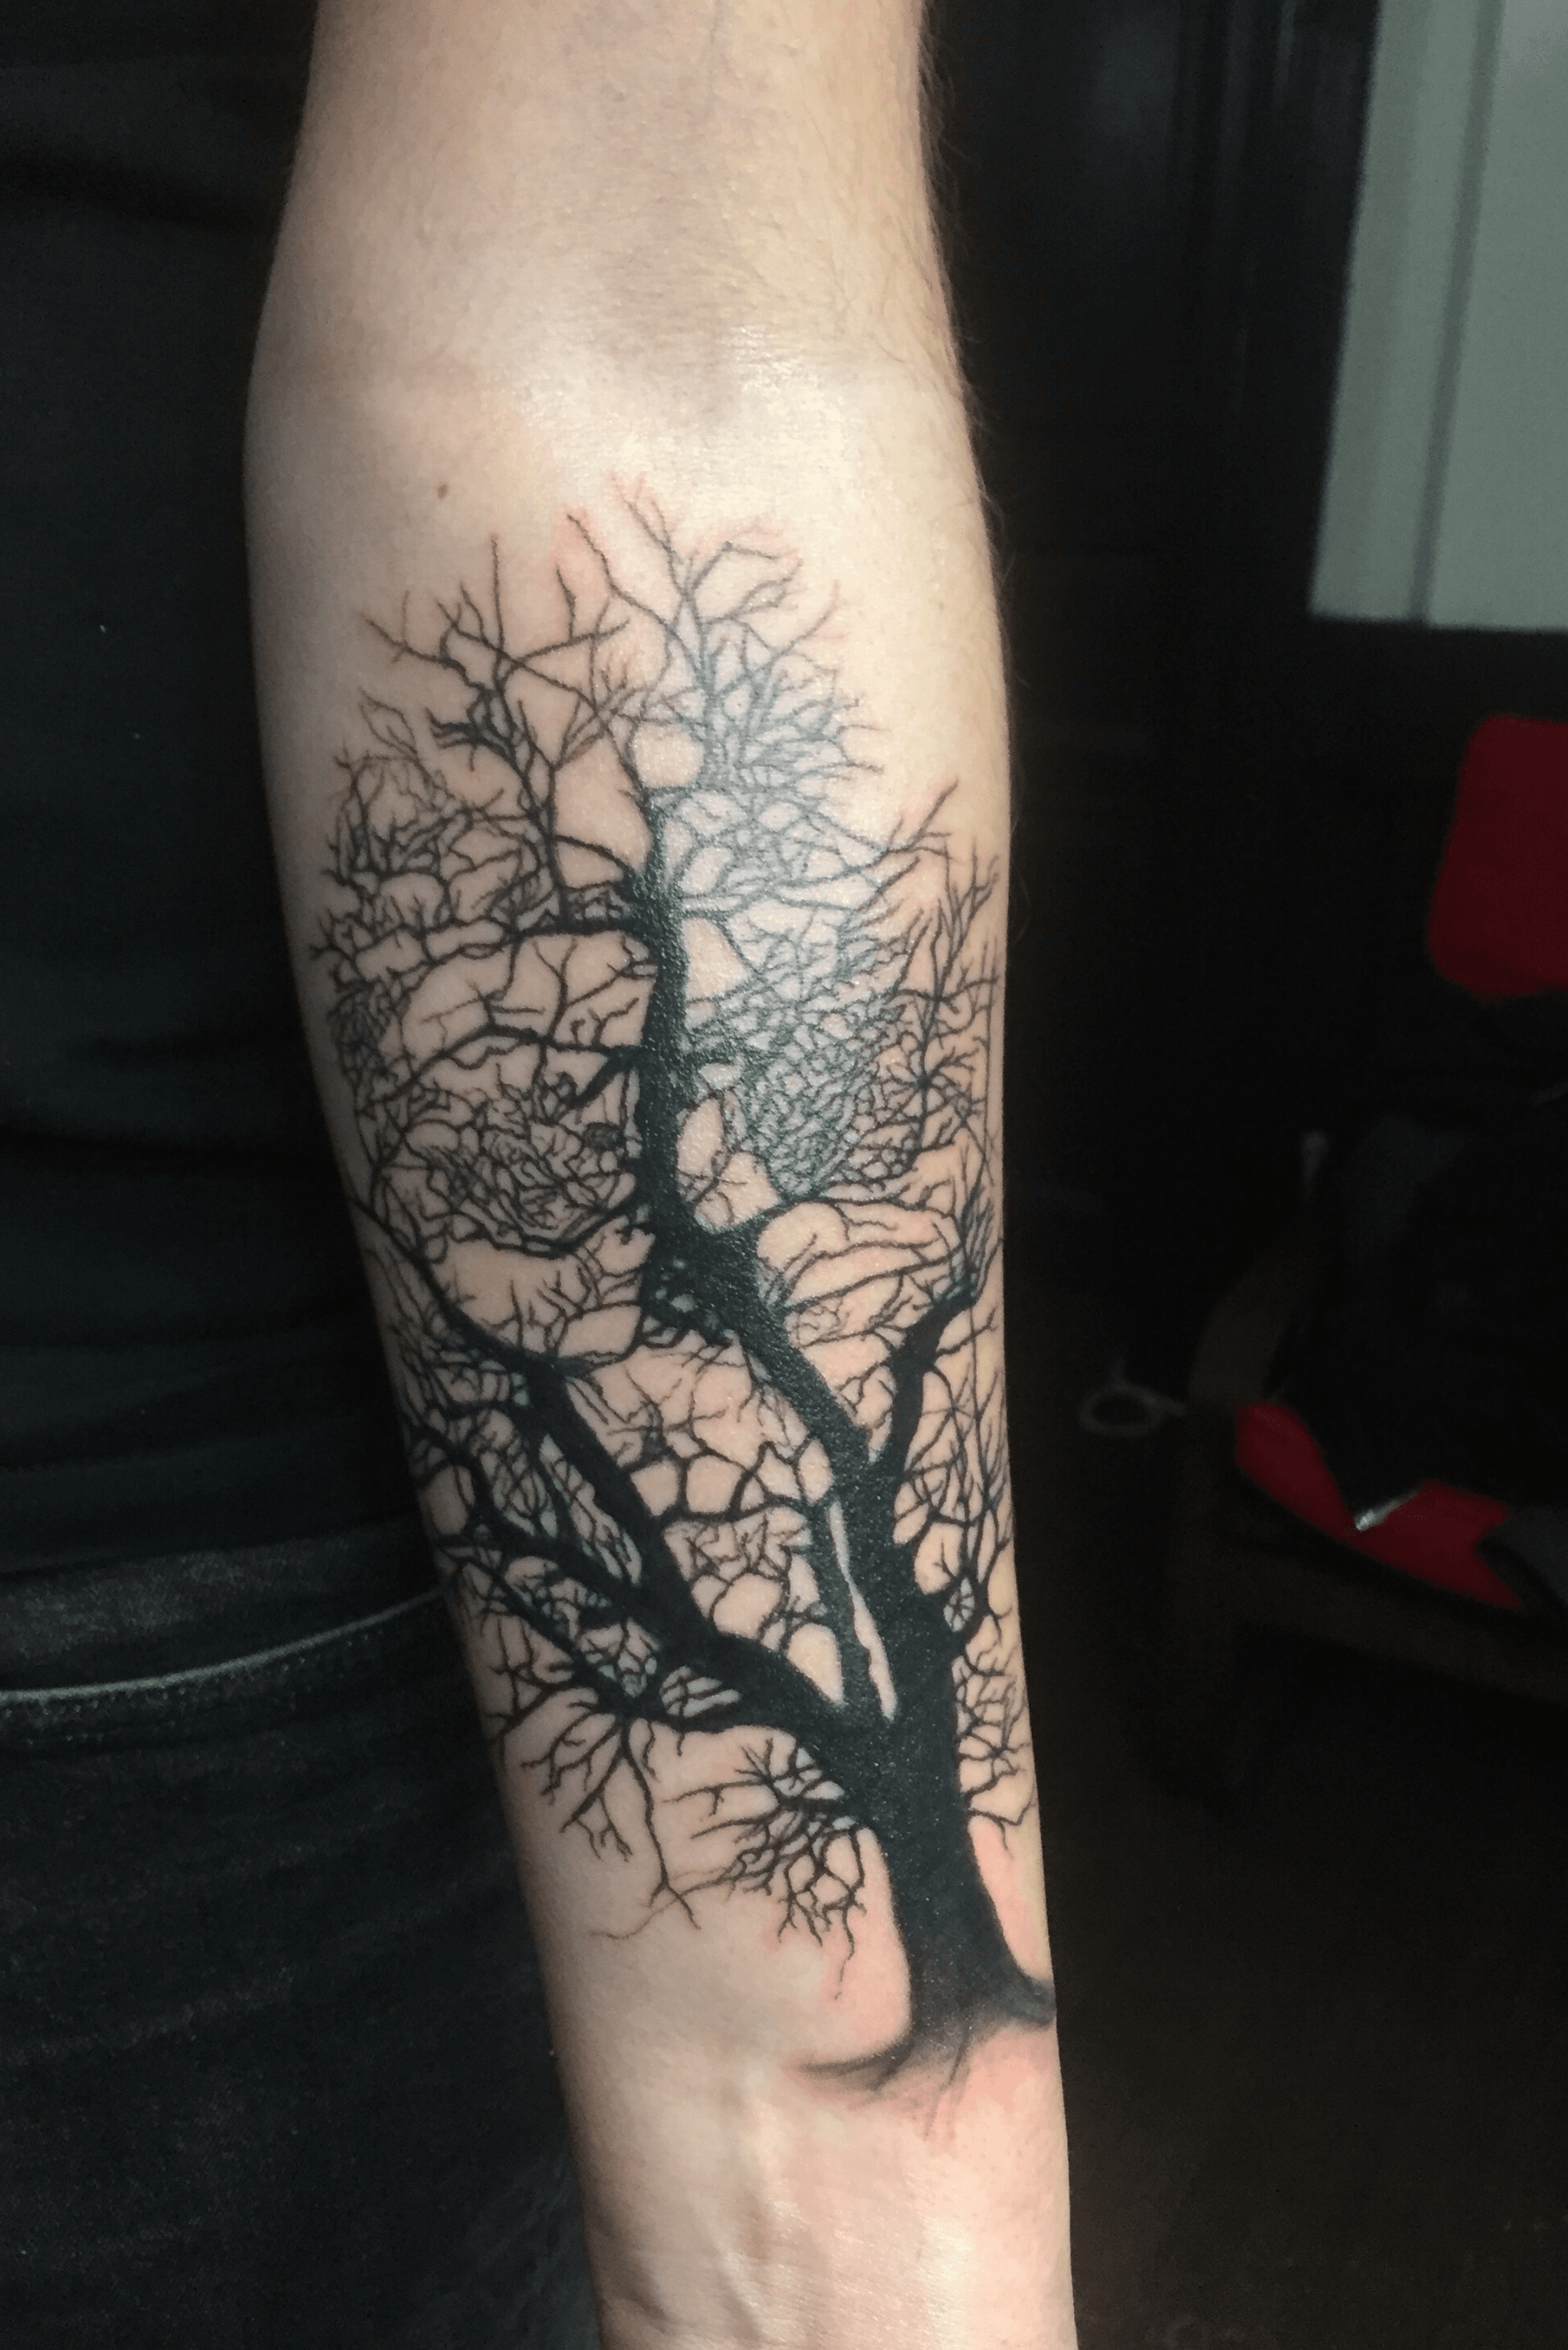 Ryan Smokoska on Twitter Skull Tree Roots Galaxy tattoo  httpstco328fnFM3jr httpstcoOQOYGOq9US  Twitter